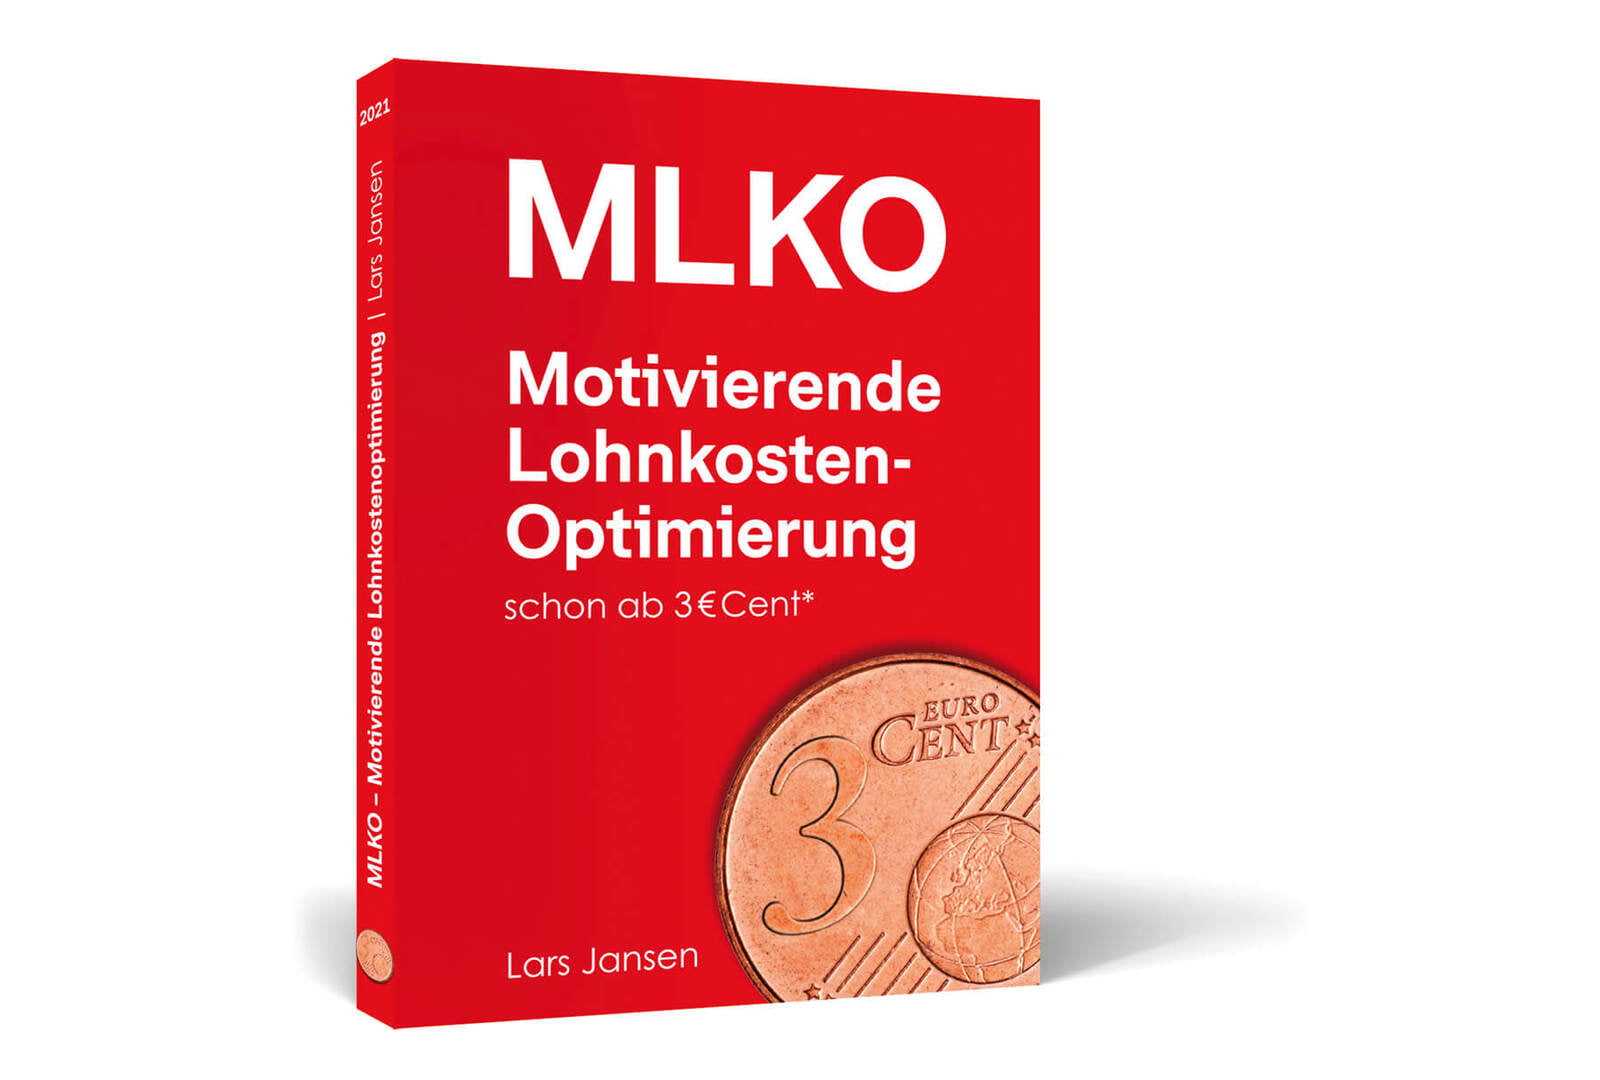 Riso - MLKO Motivierende Lohnkosten-Optimierung Buch von Lars Jansen